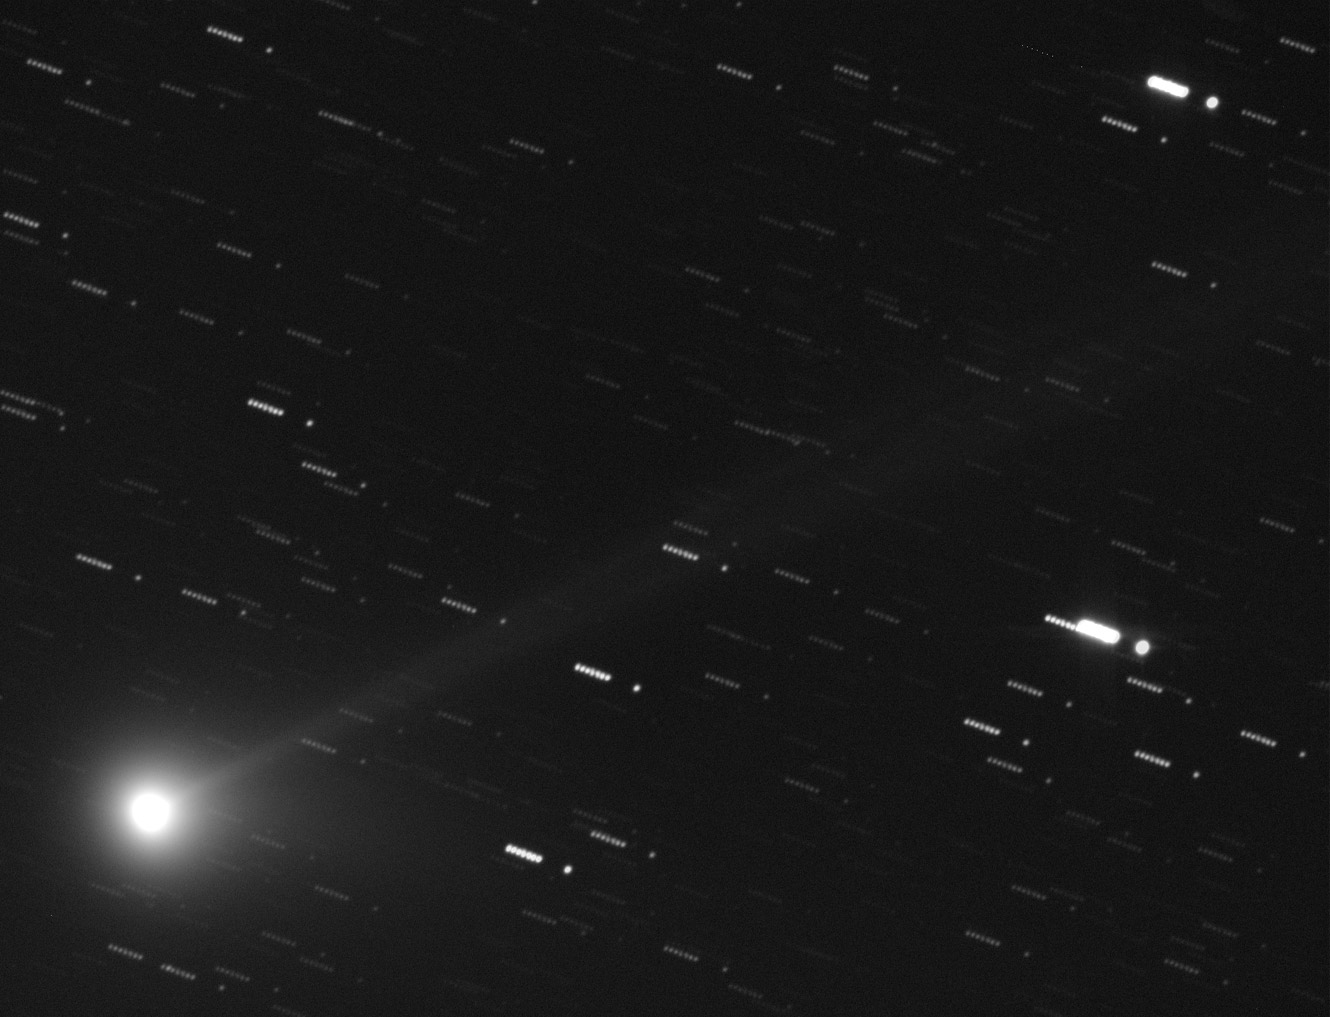 Komet C/2009 R1